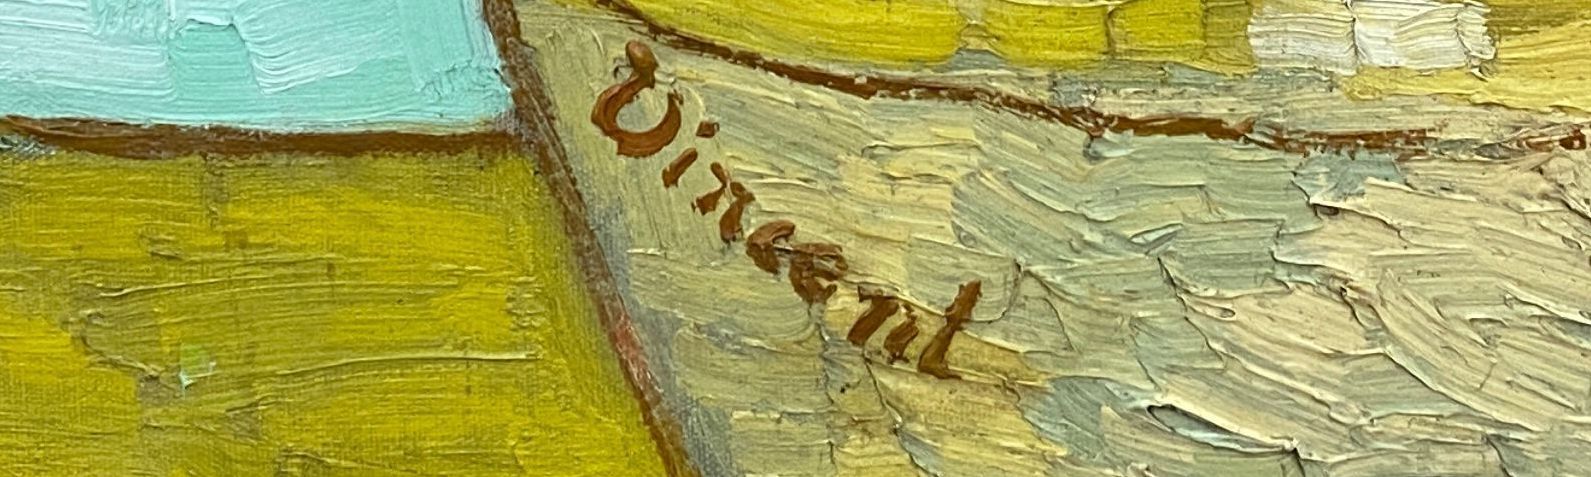 Signature de Van Gogh